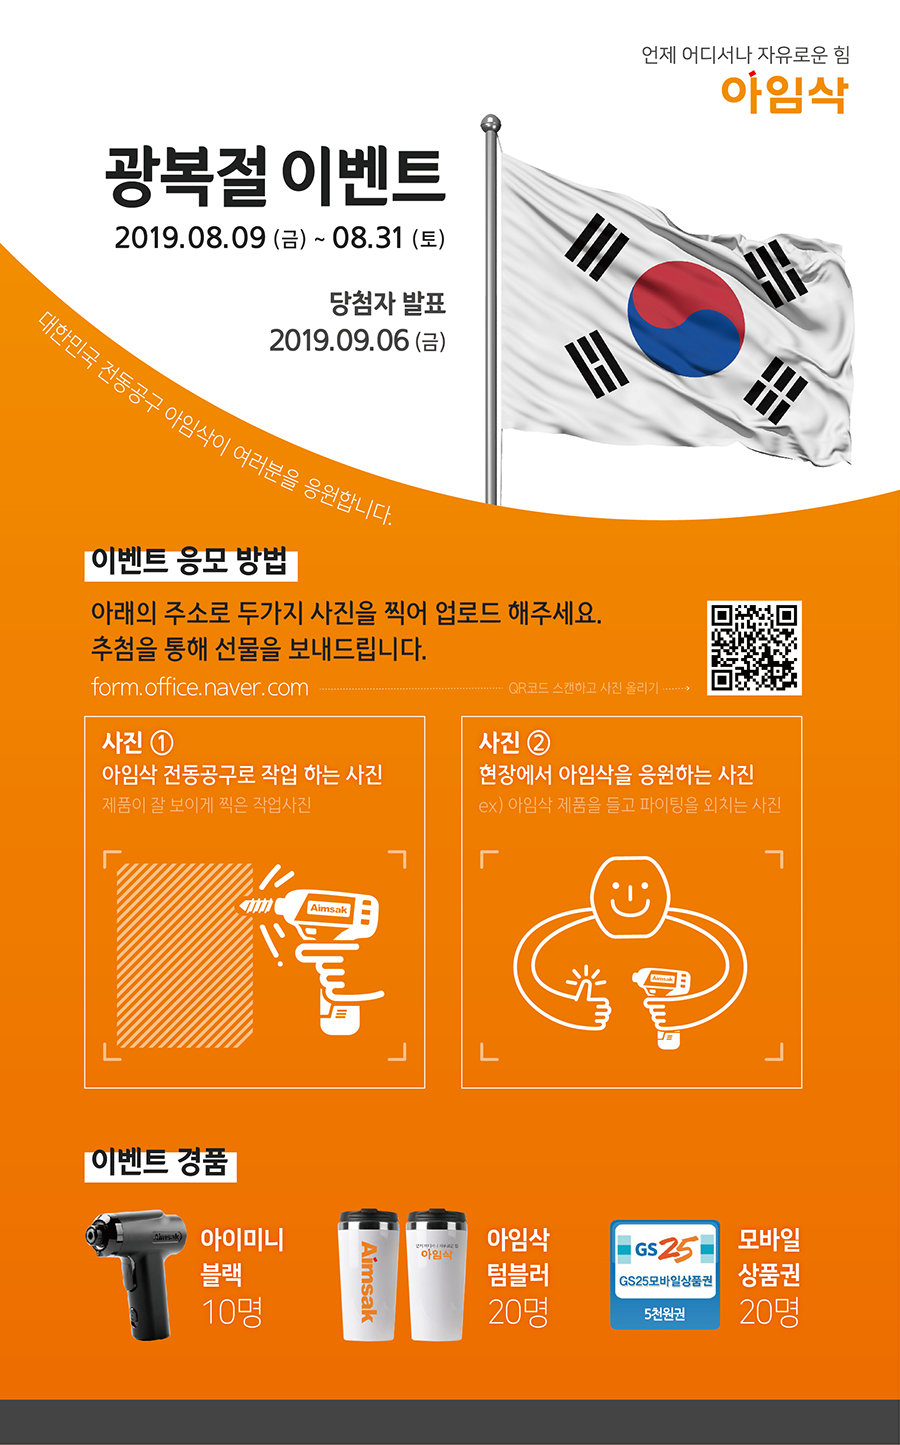 광복절 이벤트 - 대한민국 전동공구 아임삭을 응원해주세요